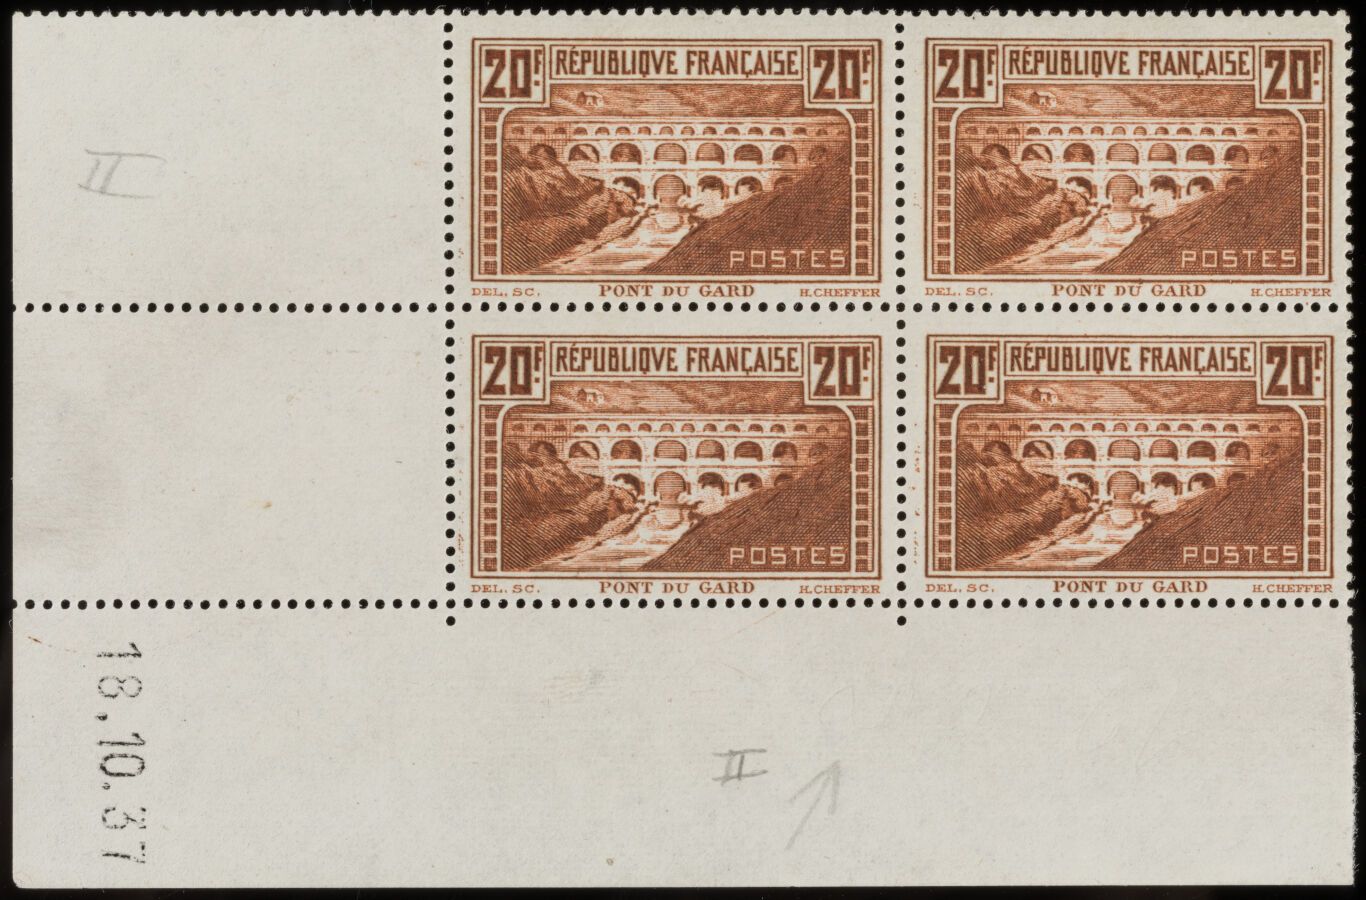 Null Sello N°262 Tipo II - Bloque de 4 sellos: 20f Pont du Gard con esquina fech&hellip;